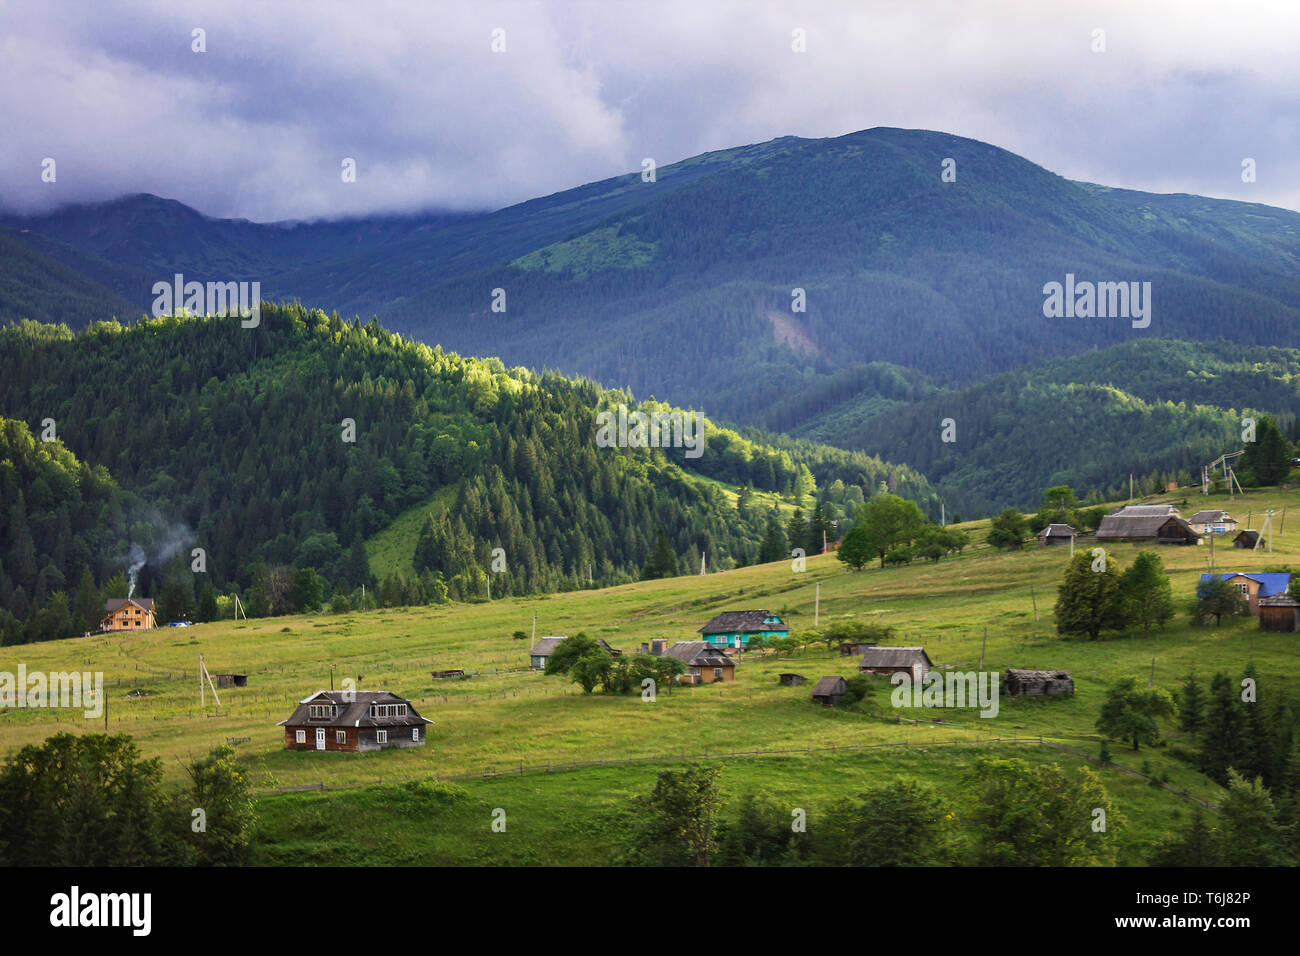 Schönen Sommer oder Frühling Bergblick mit bewölktem Himmel. Ukraine, Karpaten, Dzembronia hohe Berge in leuchtenden Farben. Niemand. Wunderschöne Landschaft oder das Tal. Stockfoto